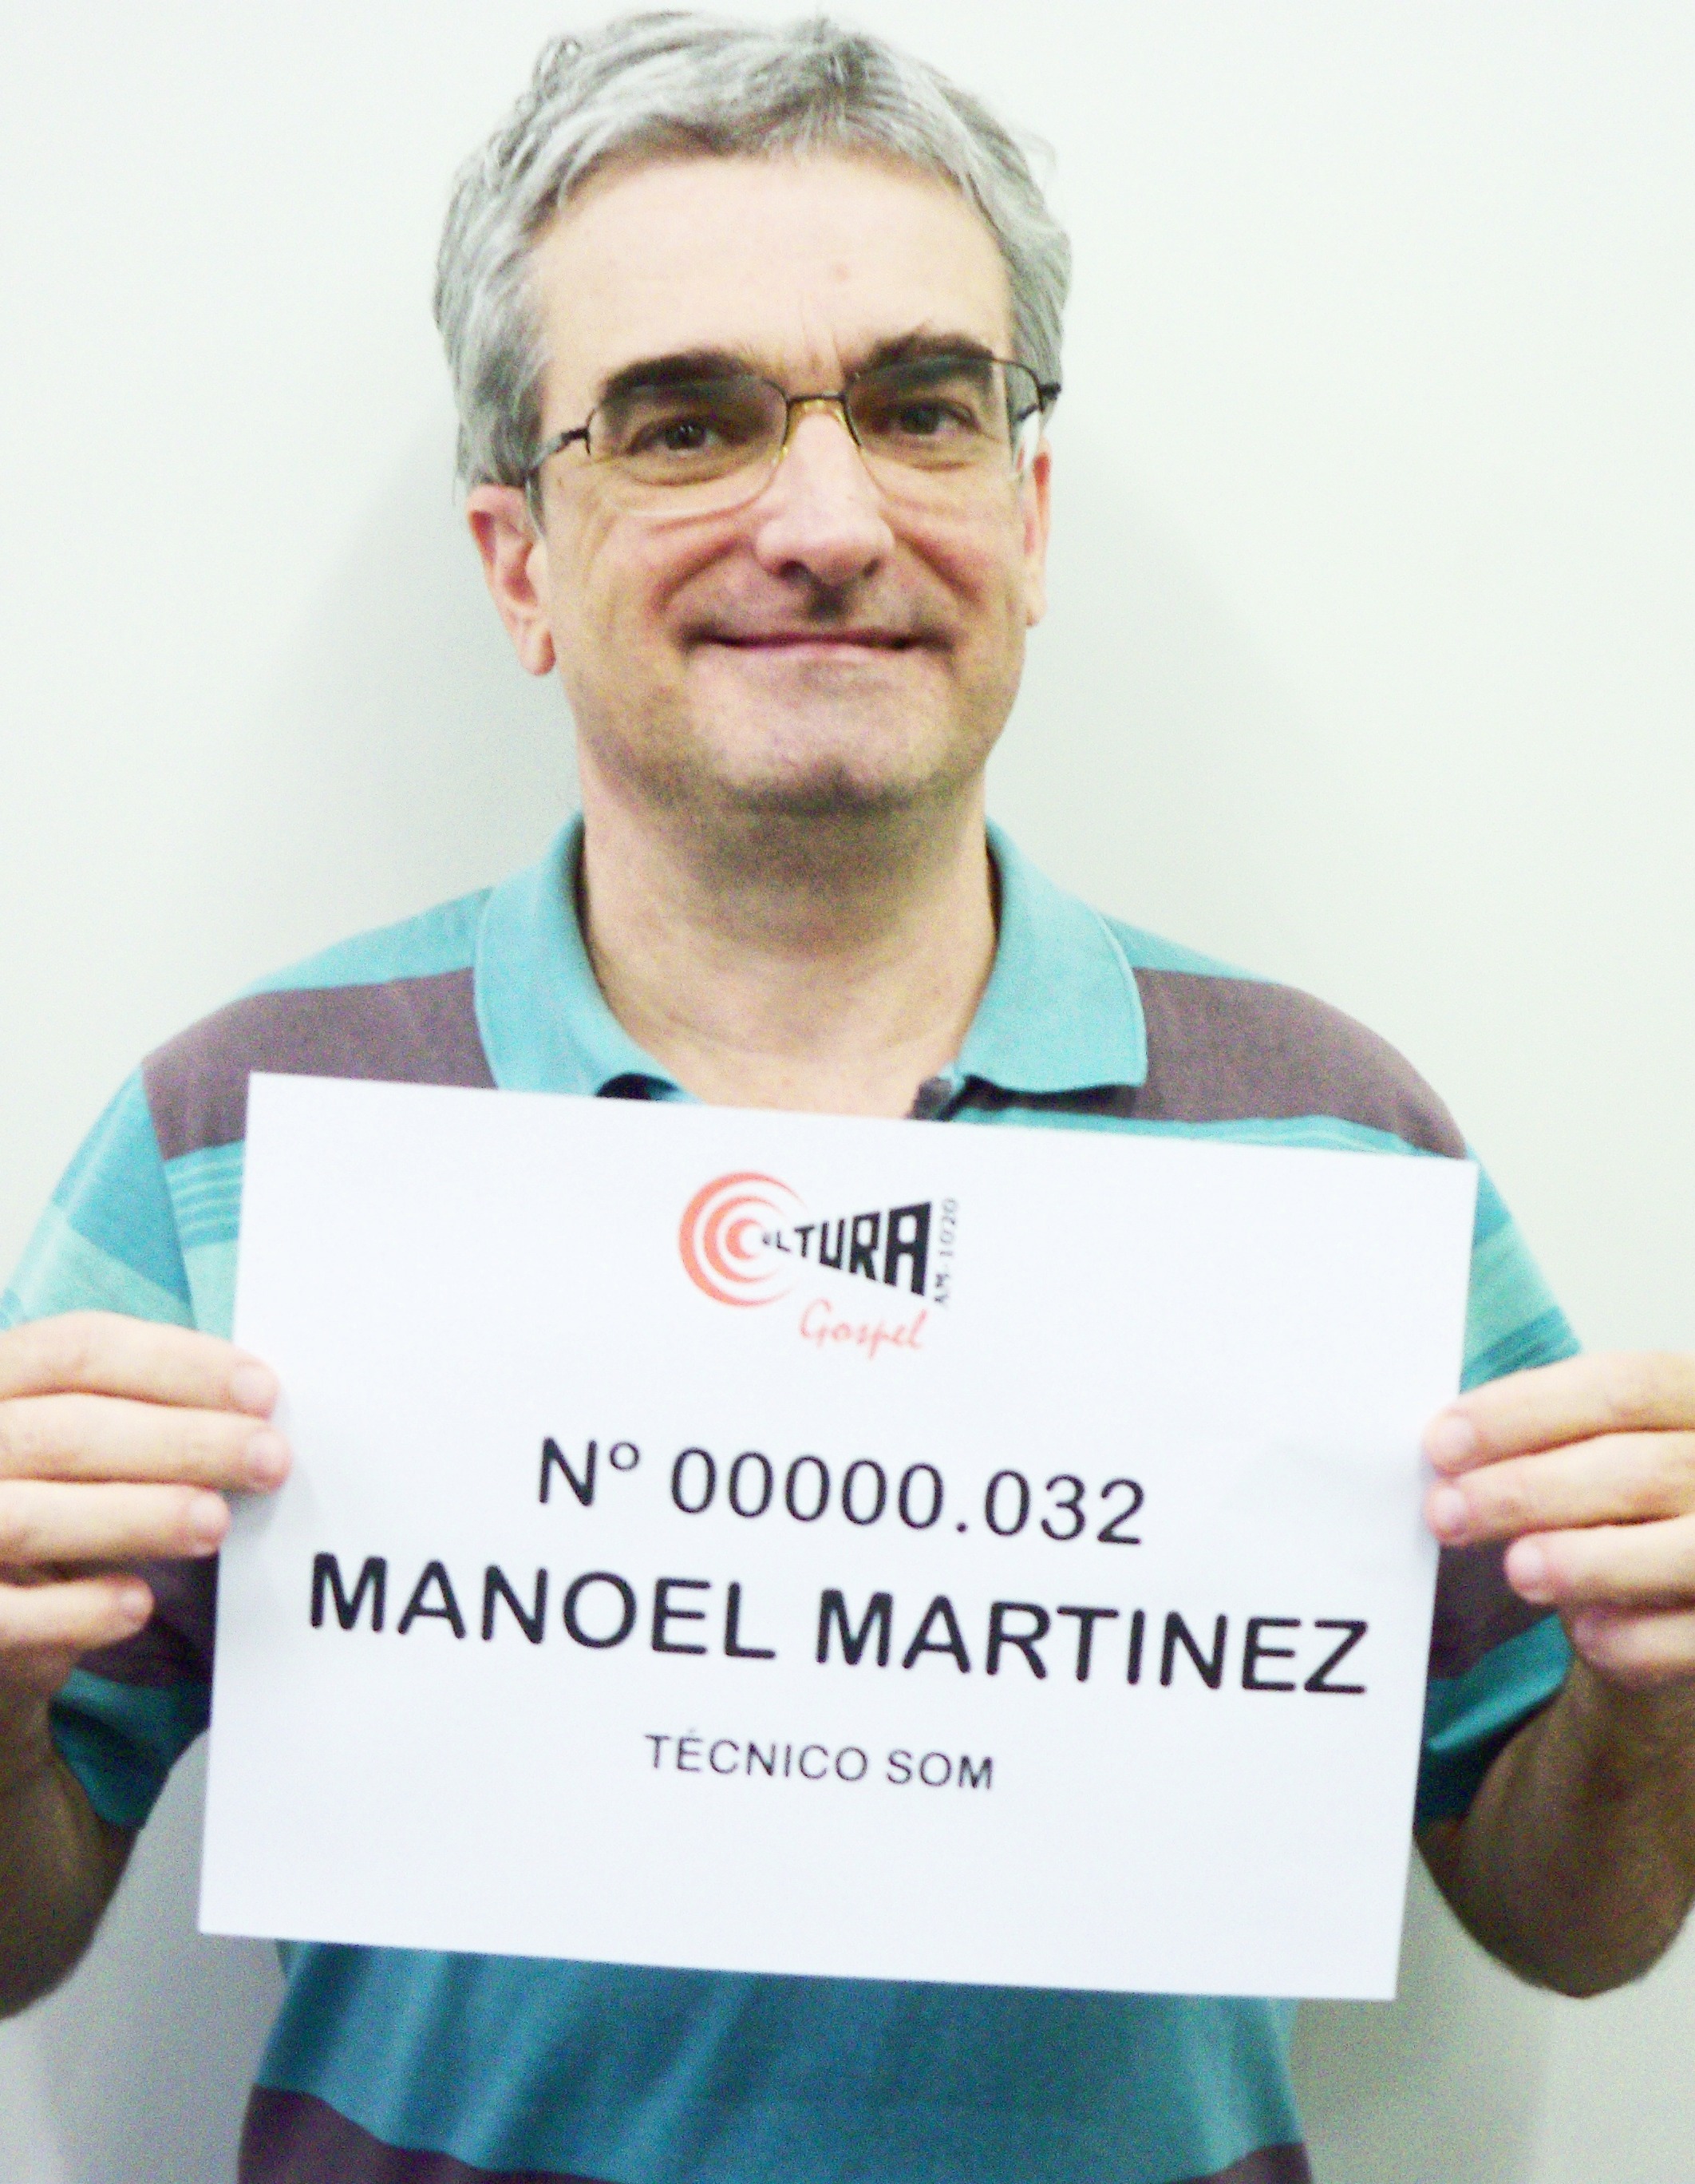 Manoel Martinez